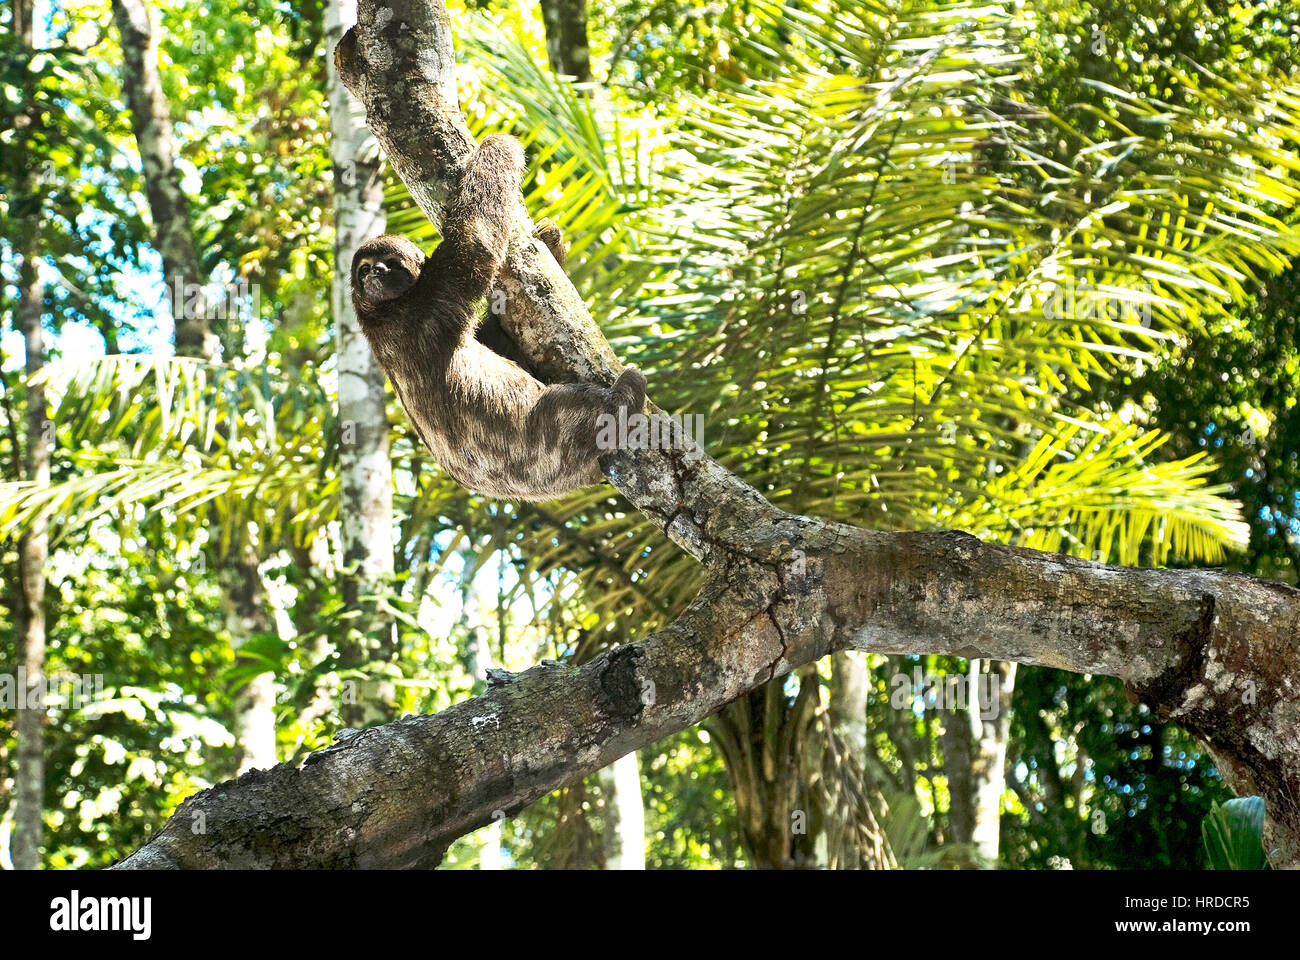 Brown-throated Faultier (Bradypus Variegatus), fotografiert im Sooretama, Espírito Santo - Südosten von Brasilien. Atlantischer Regenwald Biom. Stockfoto